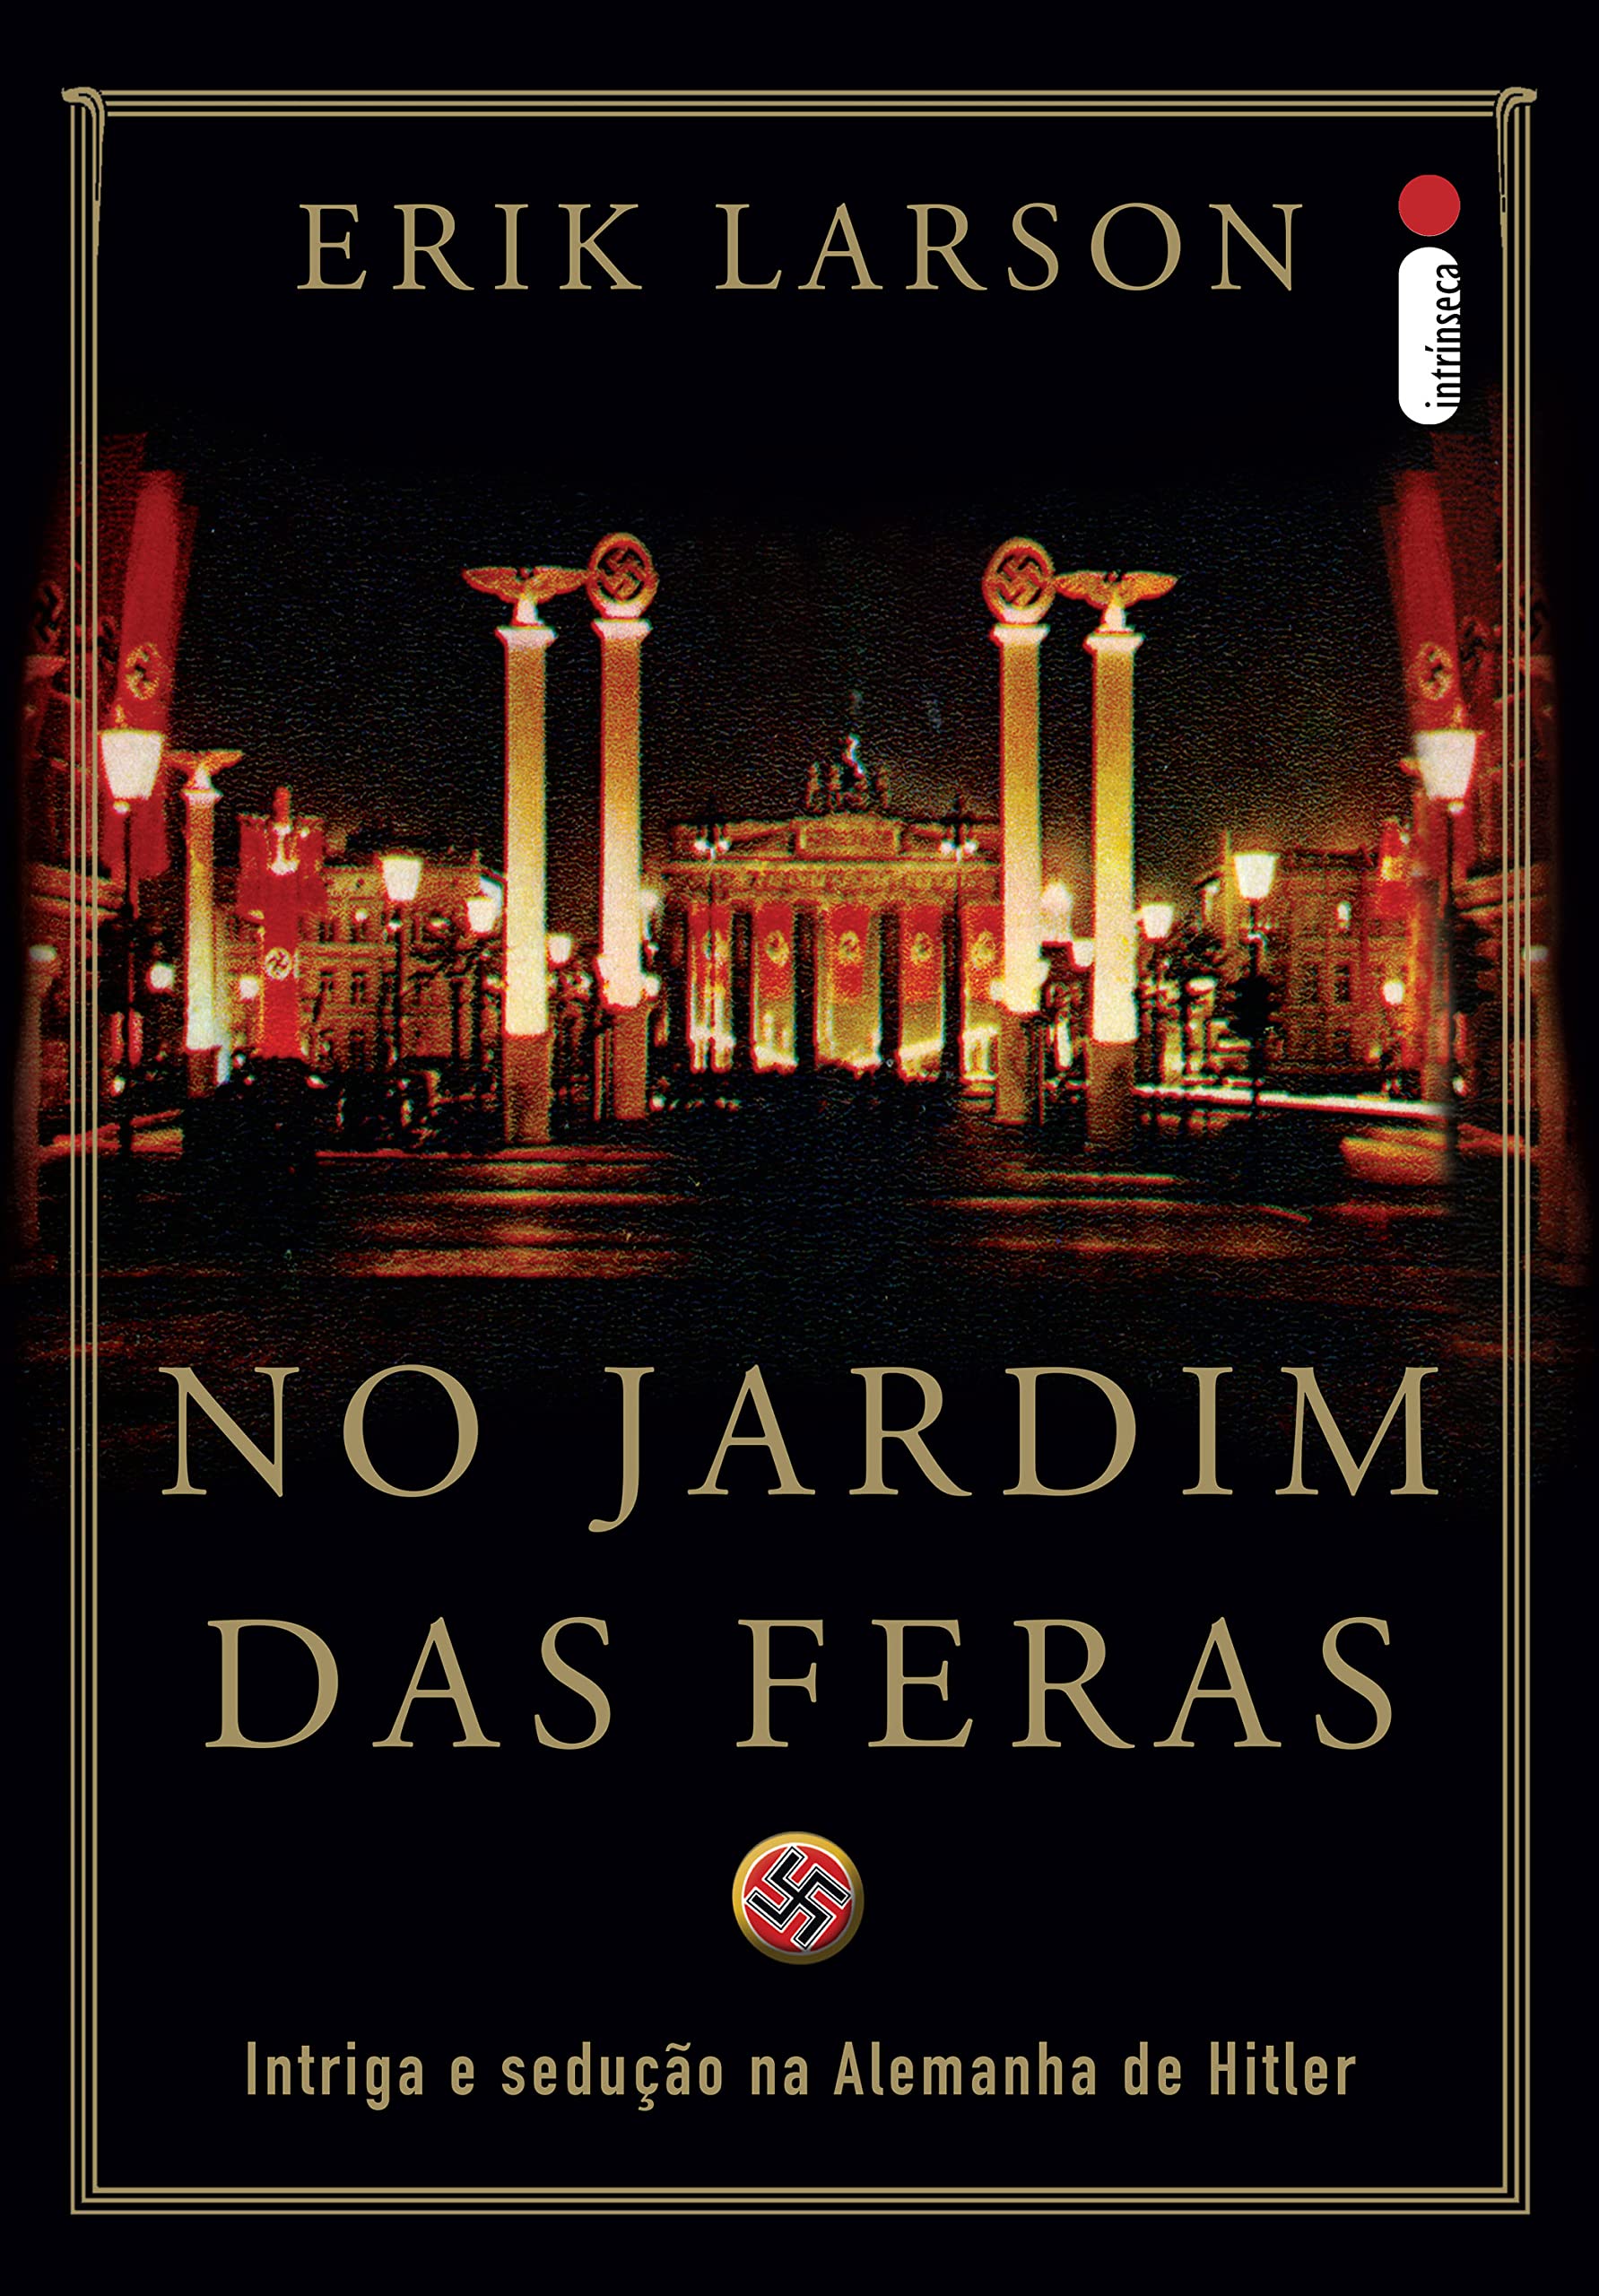 No jardim das feras: Intriga e sedução na Alemanha de Hitler (Portuguese Edition)